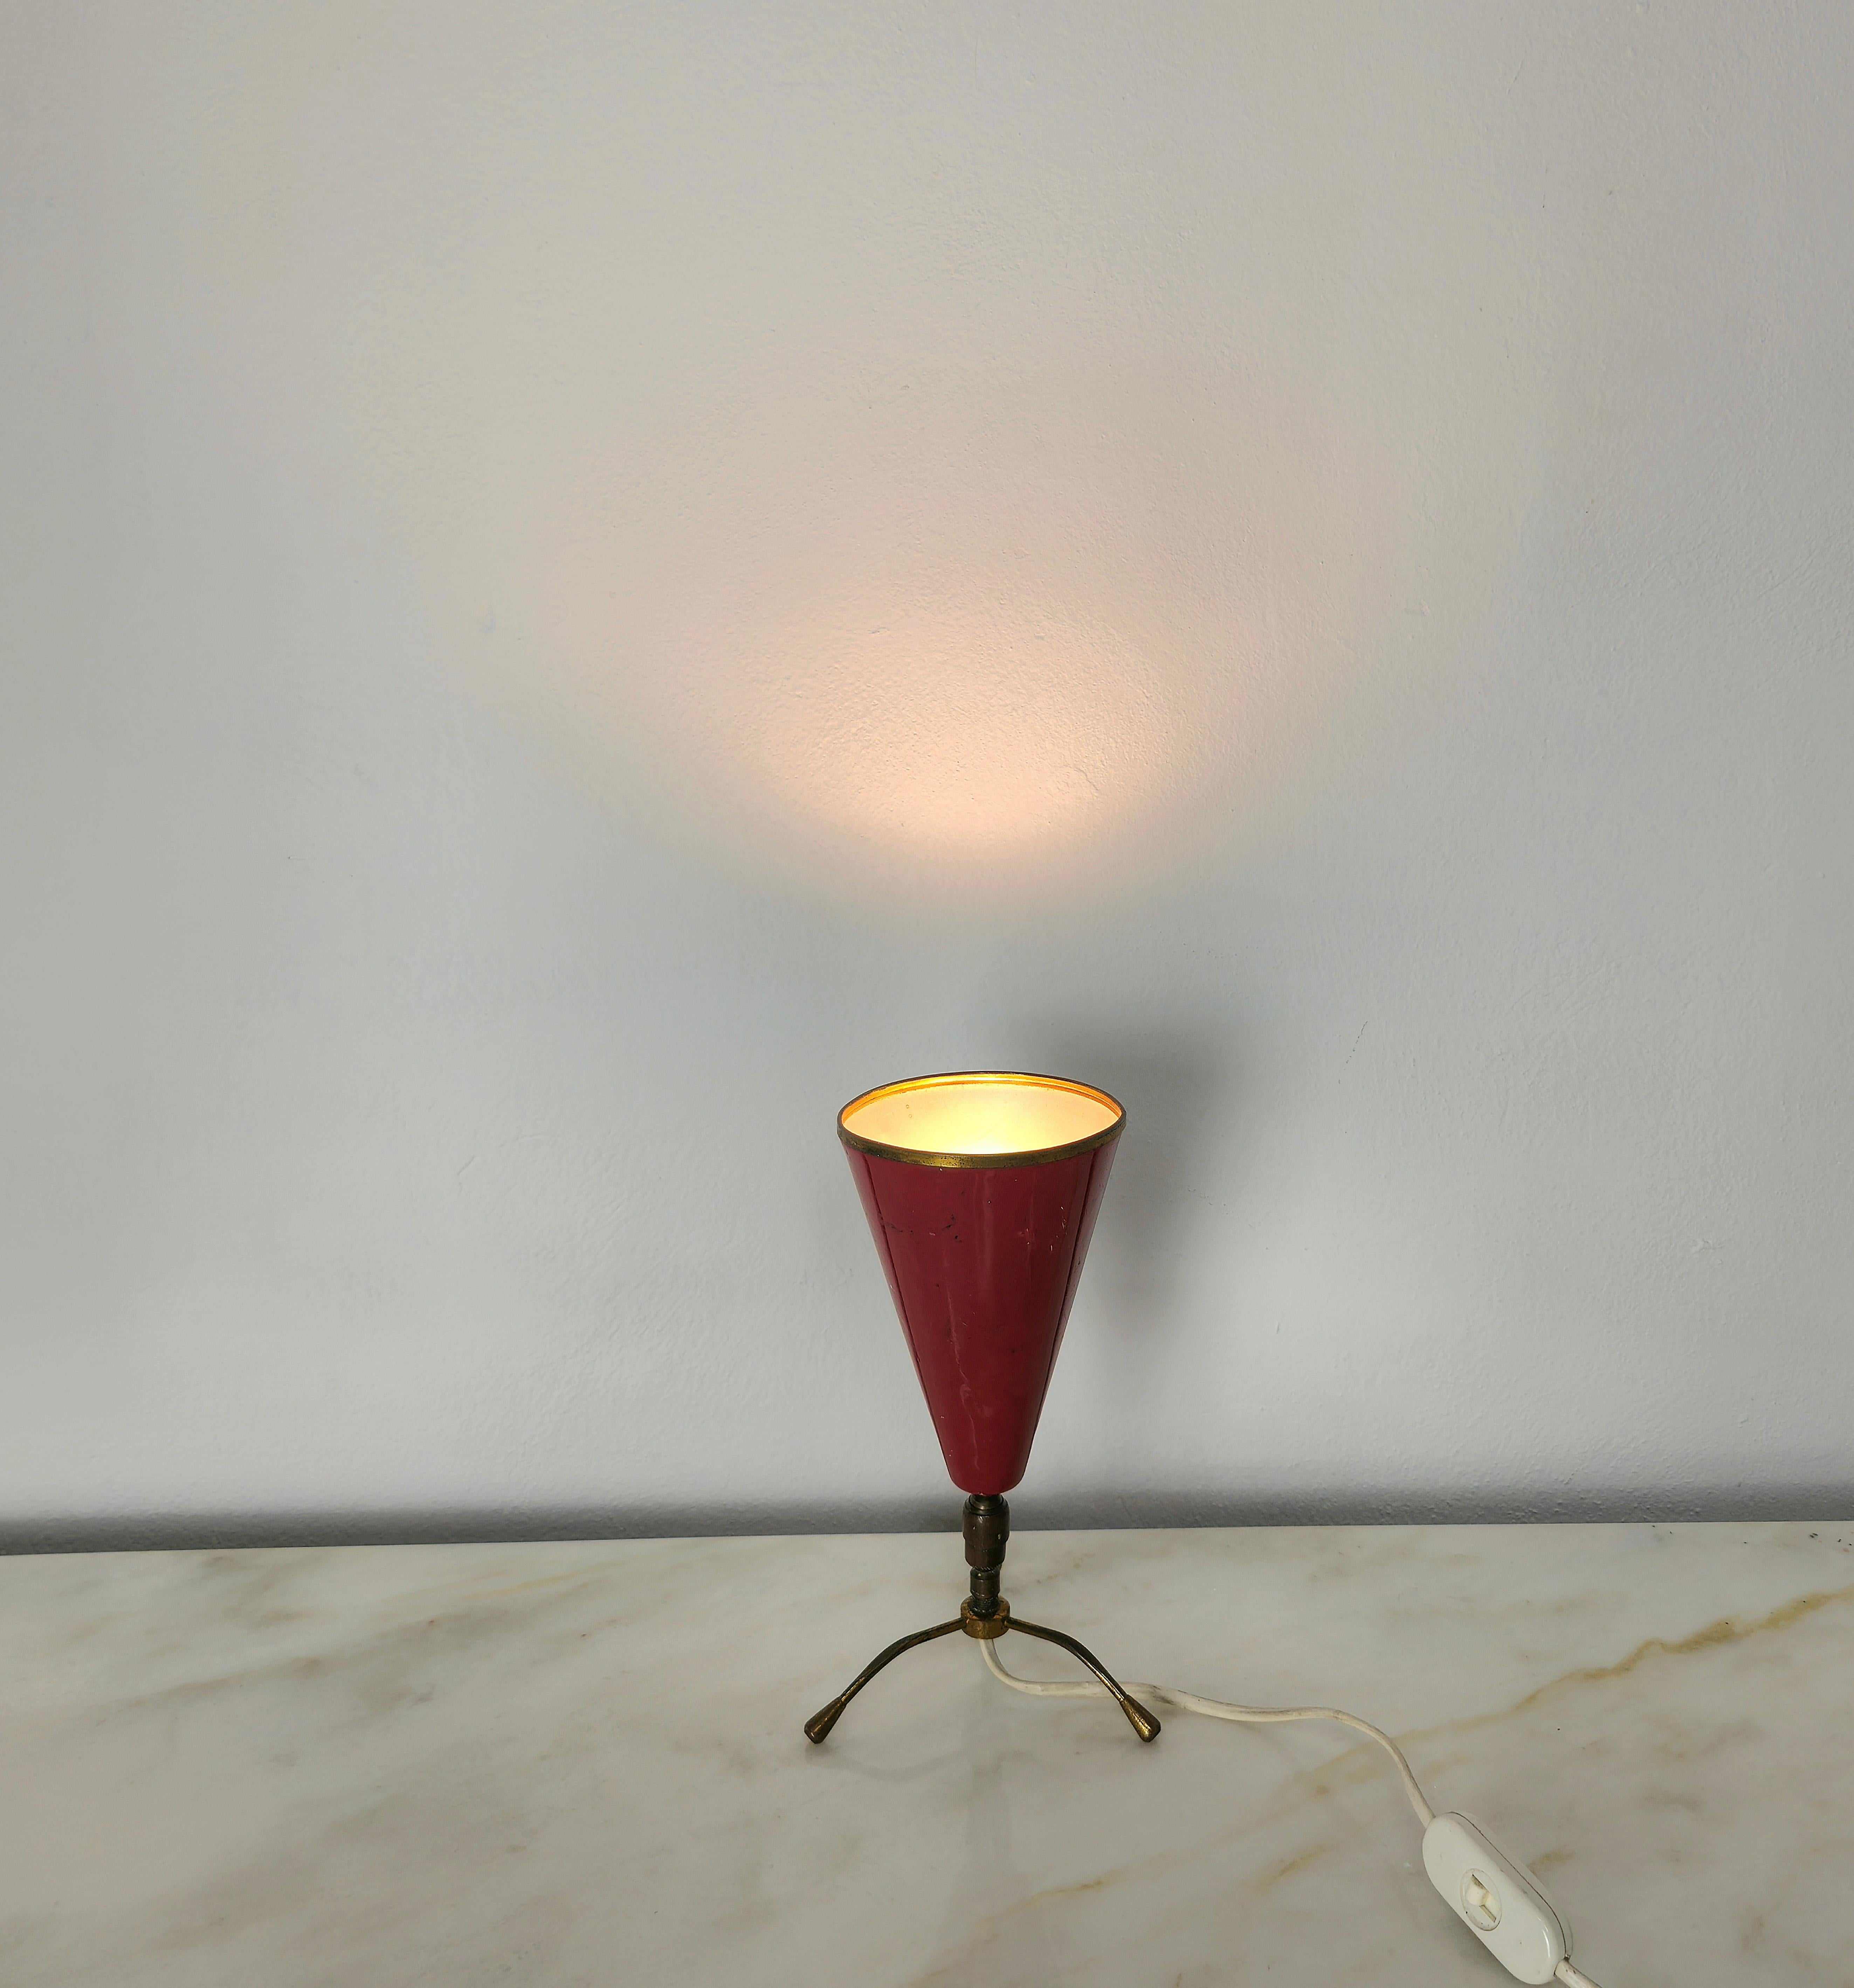 Lampe de table tripode avec 1 lumière E14 attribuable à Arredoluce en aluminium émaillé rouge et laiton. La particularité de cette lampe est le joint en laiton qui permet d'orienter le diffuseur conique comme on le souhaite.



Note : Nous essayons